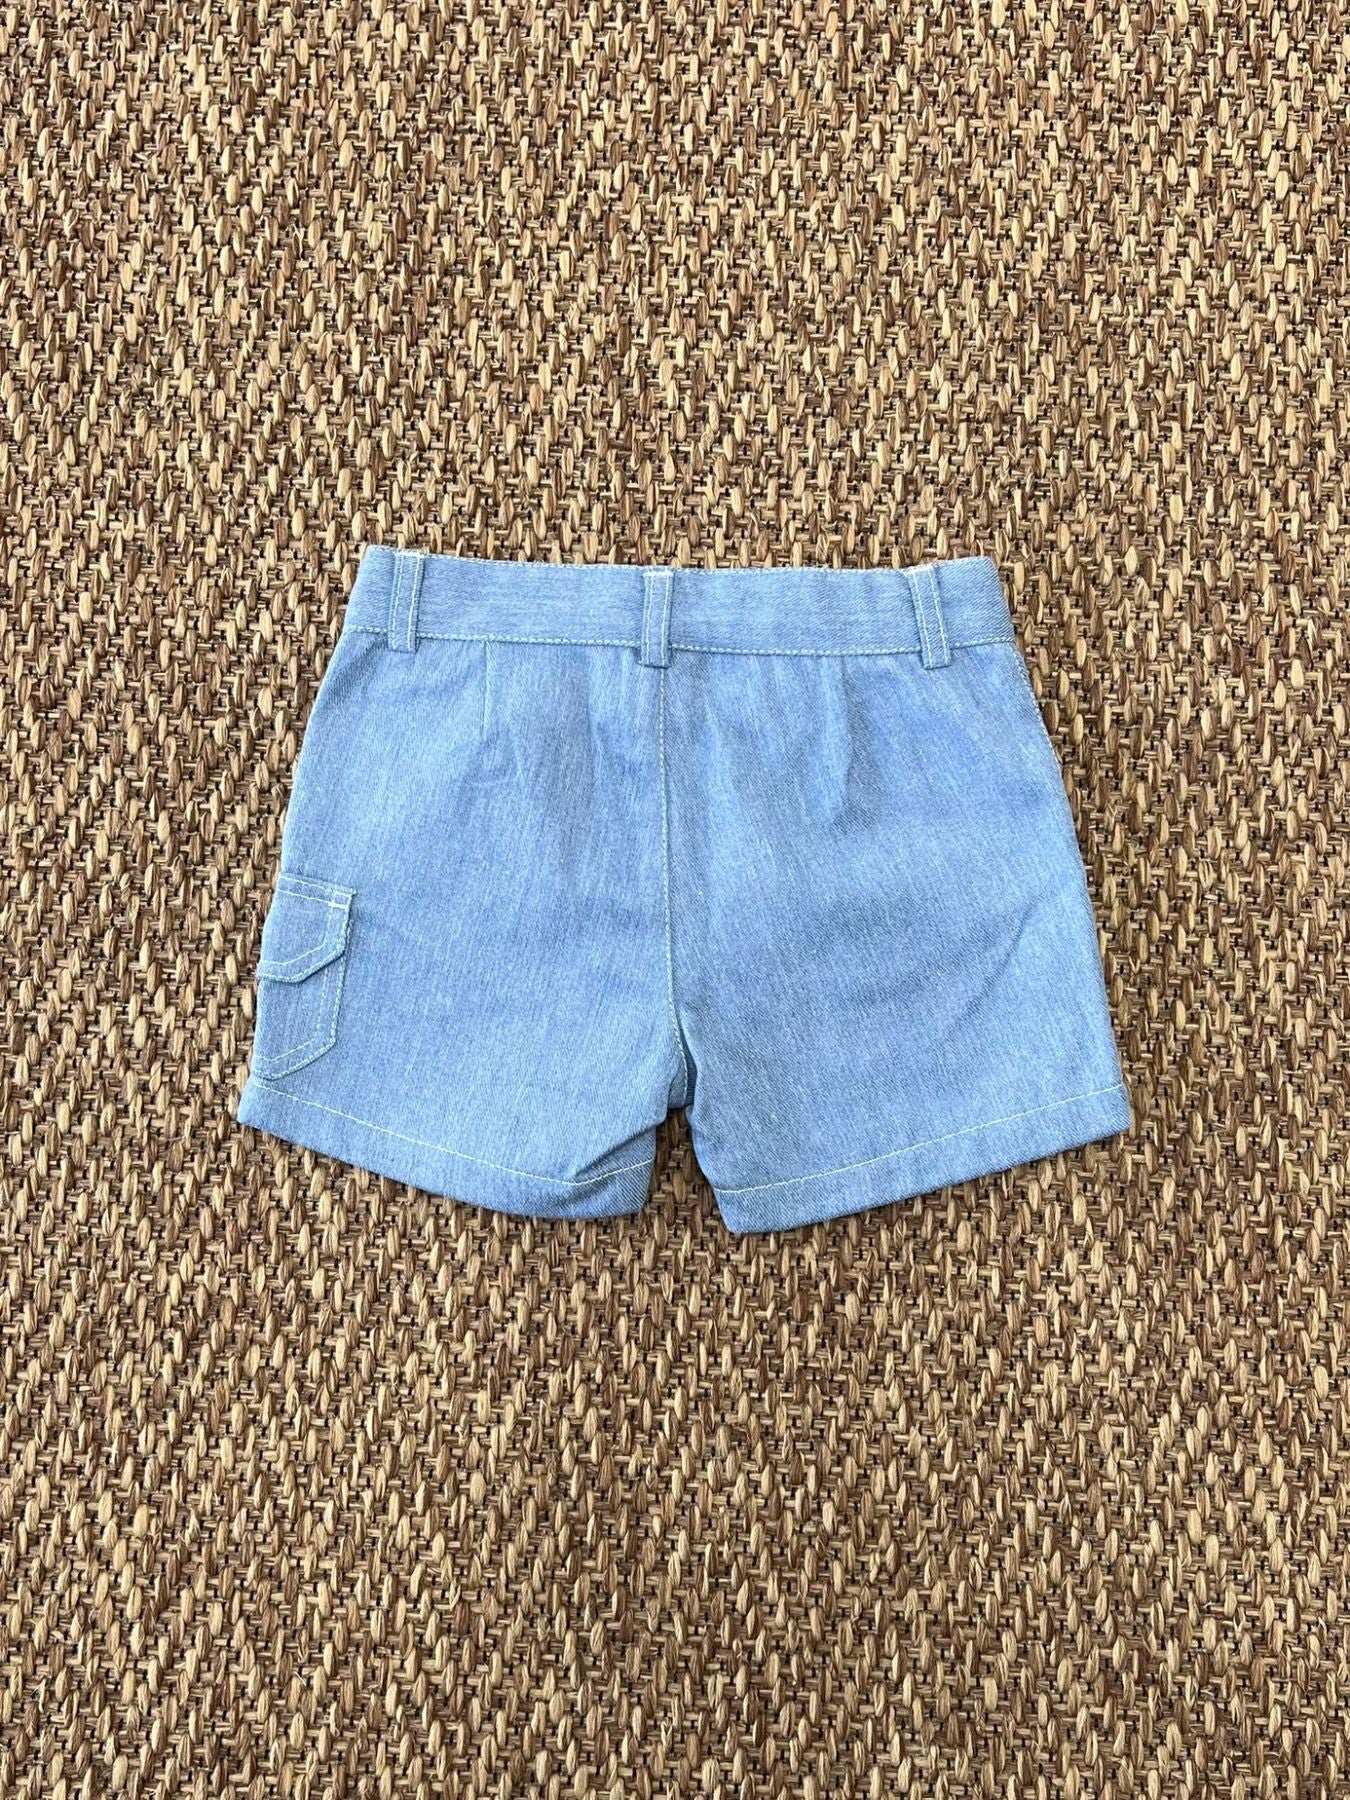 Shorts - DK507/PV24